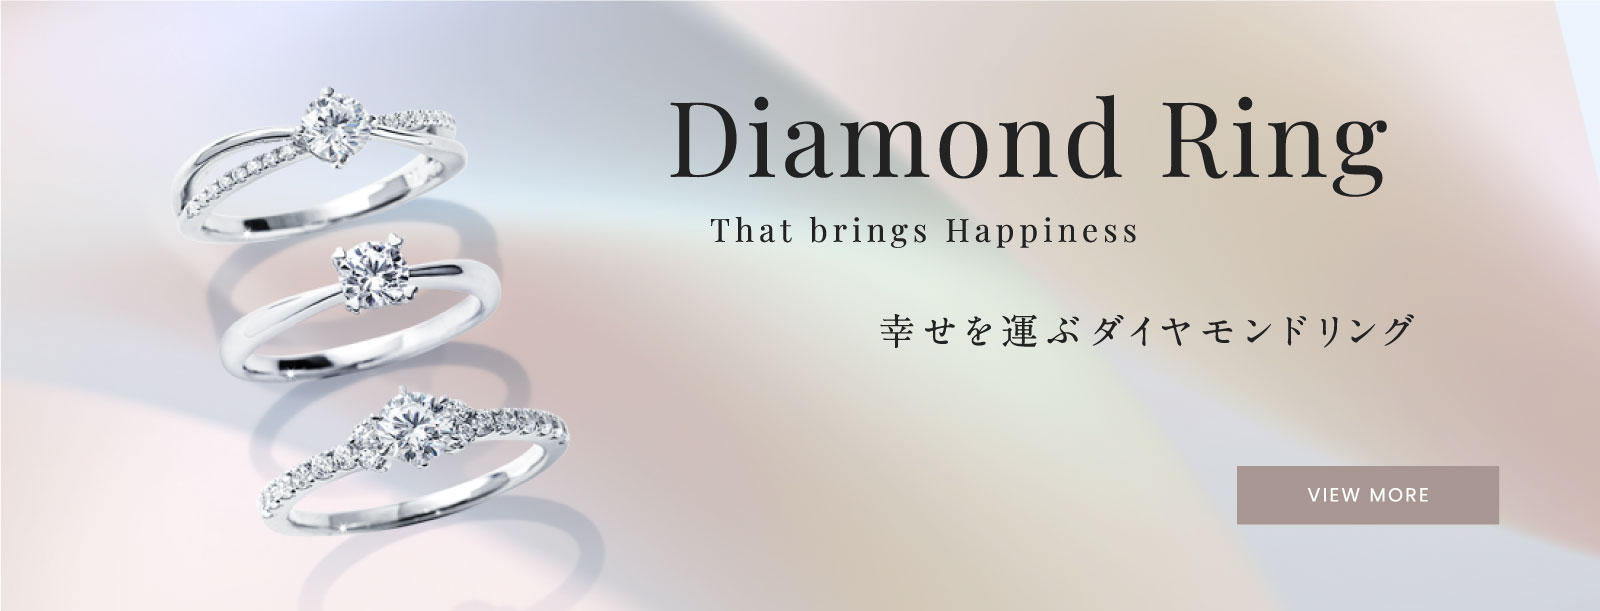 幸せを運ぶダイヤモンドリング